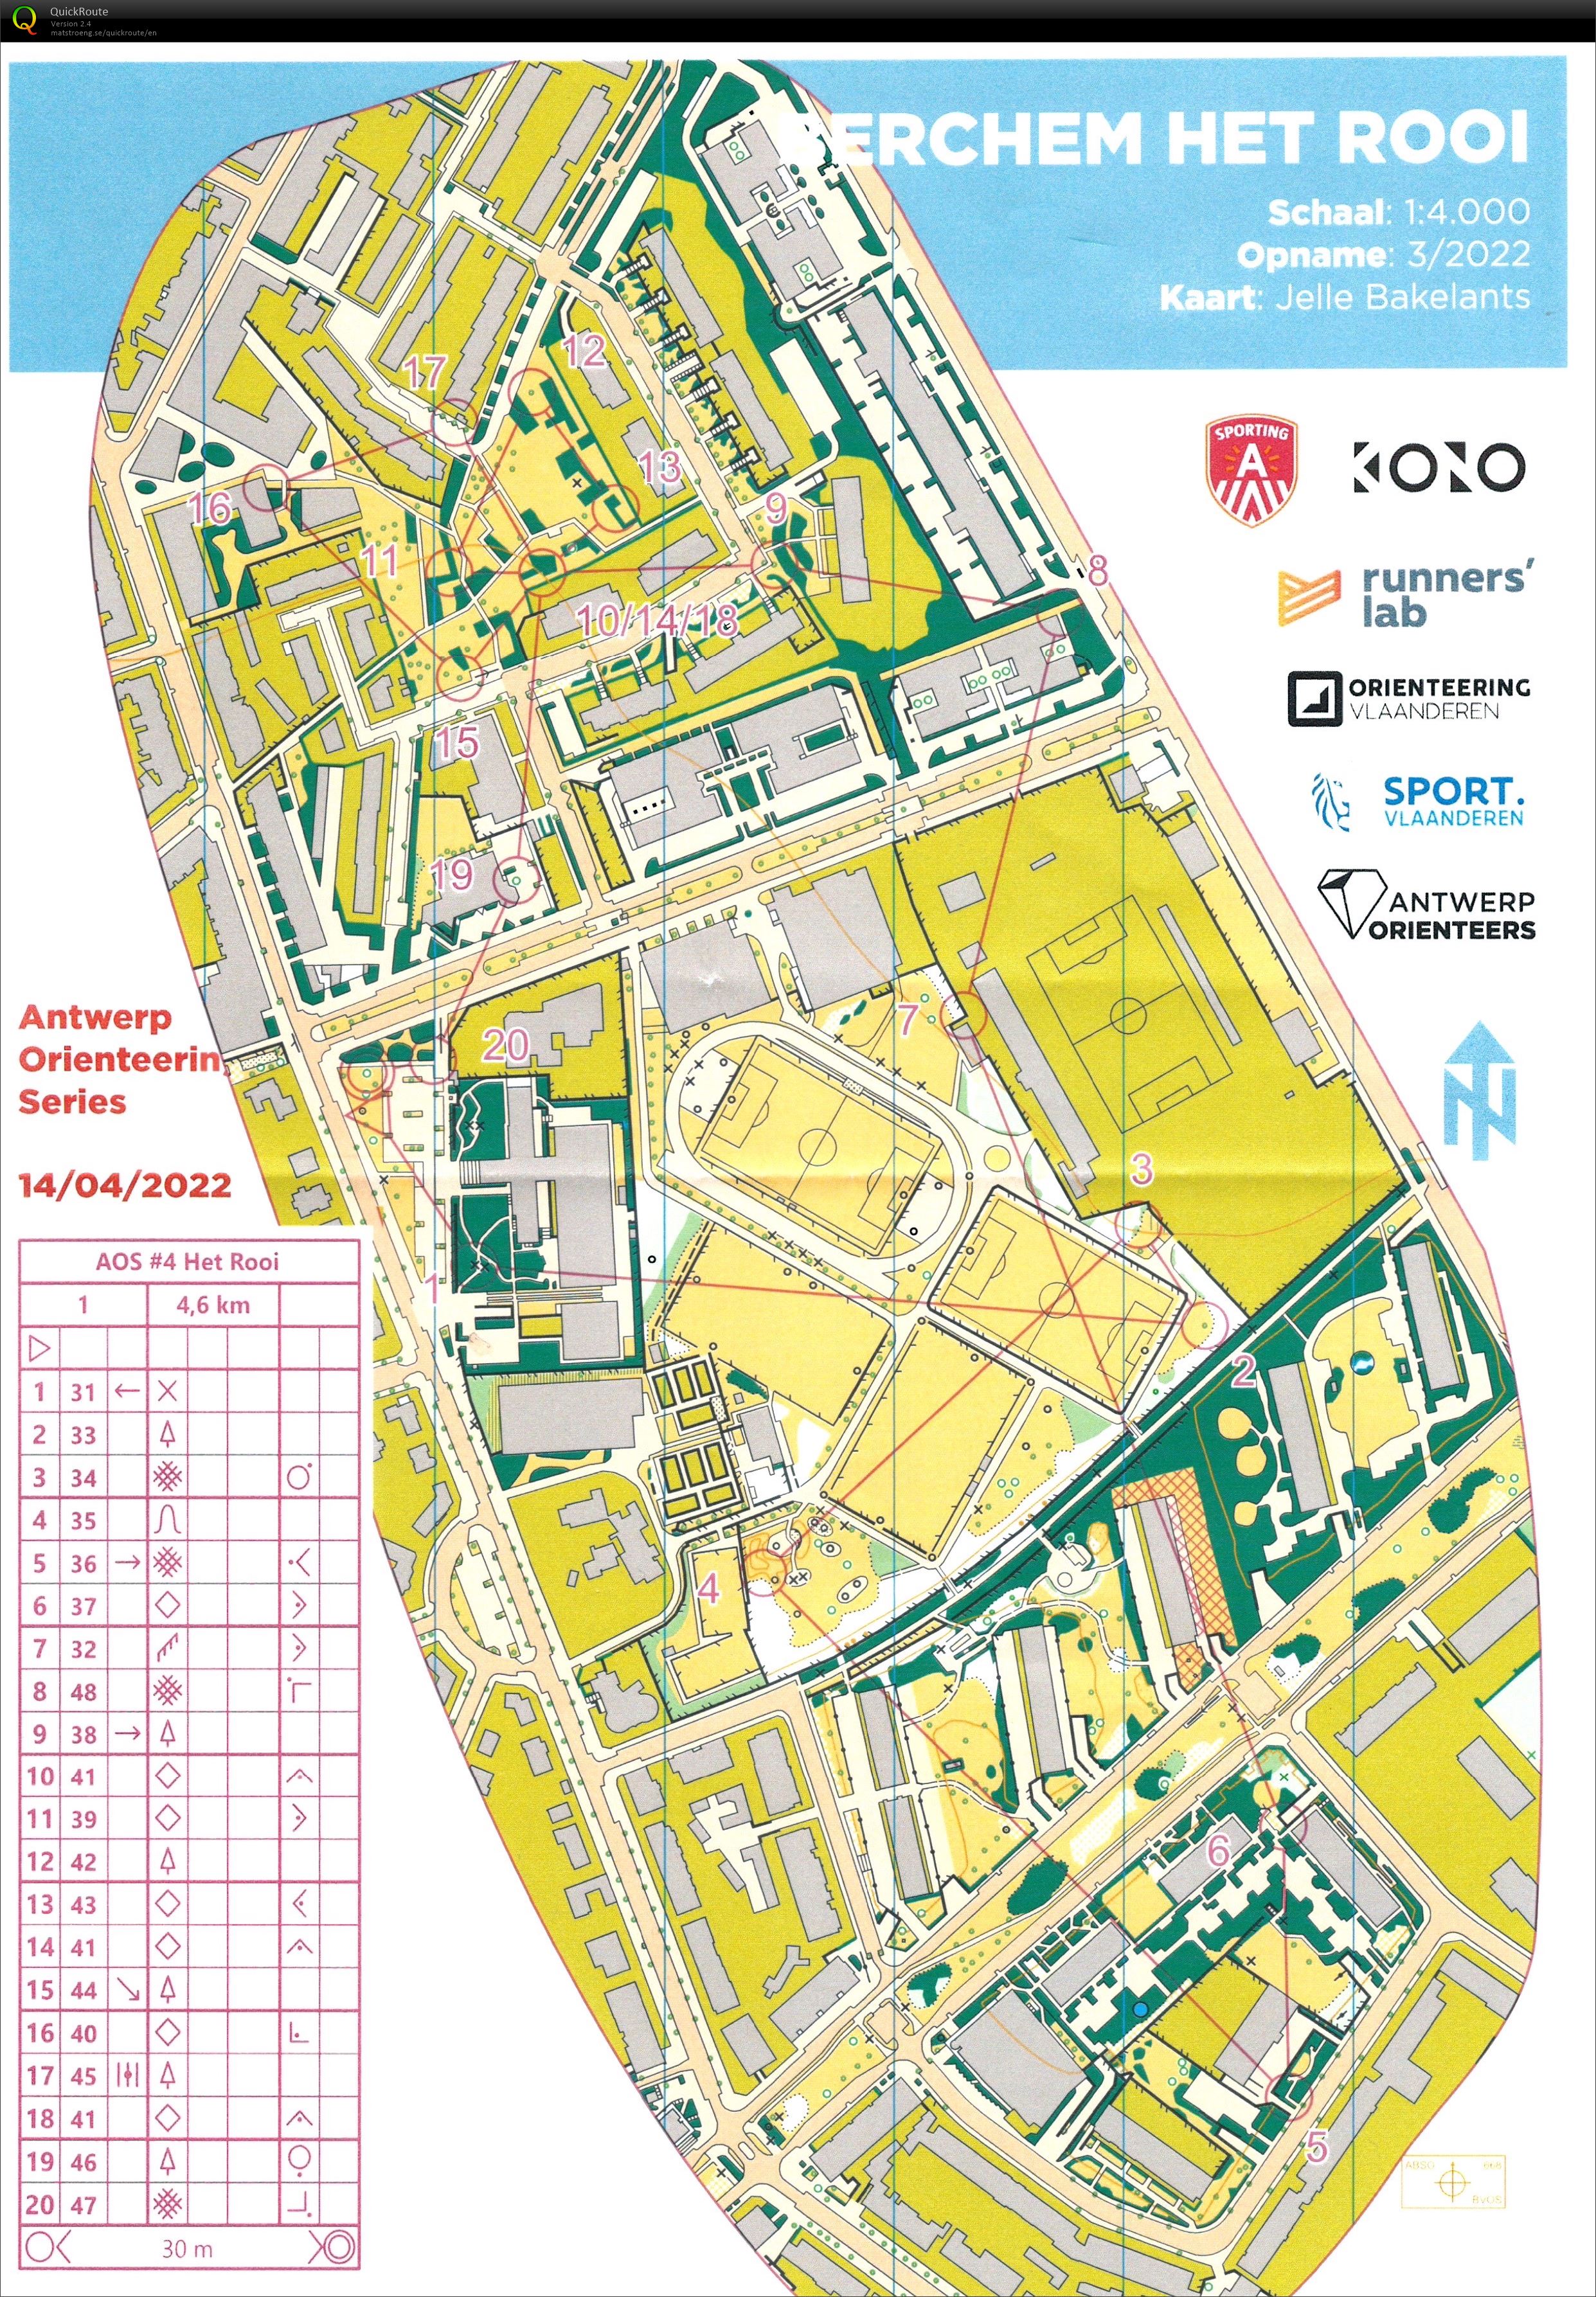 Antwerp Orienteering Series - Berchem - Het Rooi - 5K (14.04.2022)